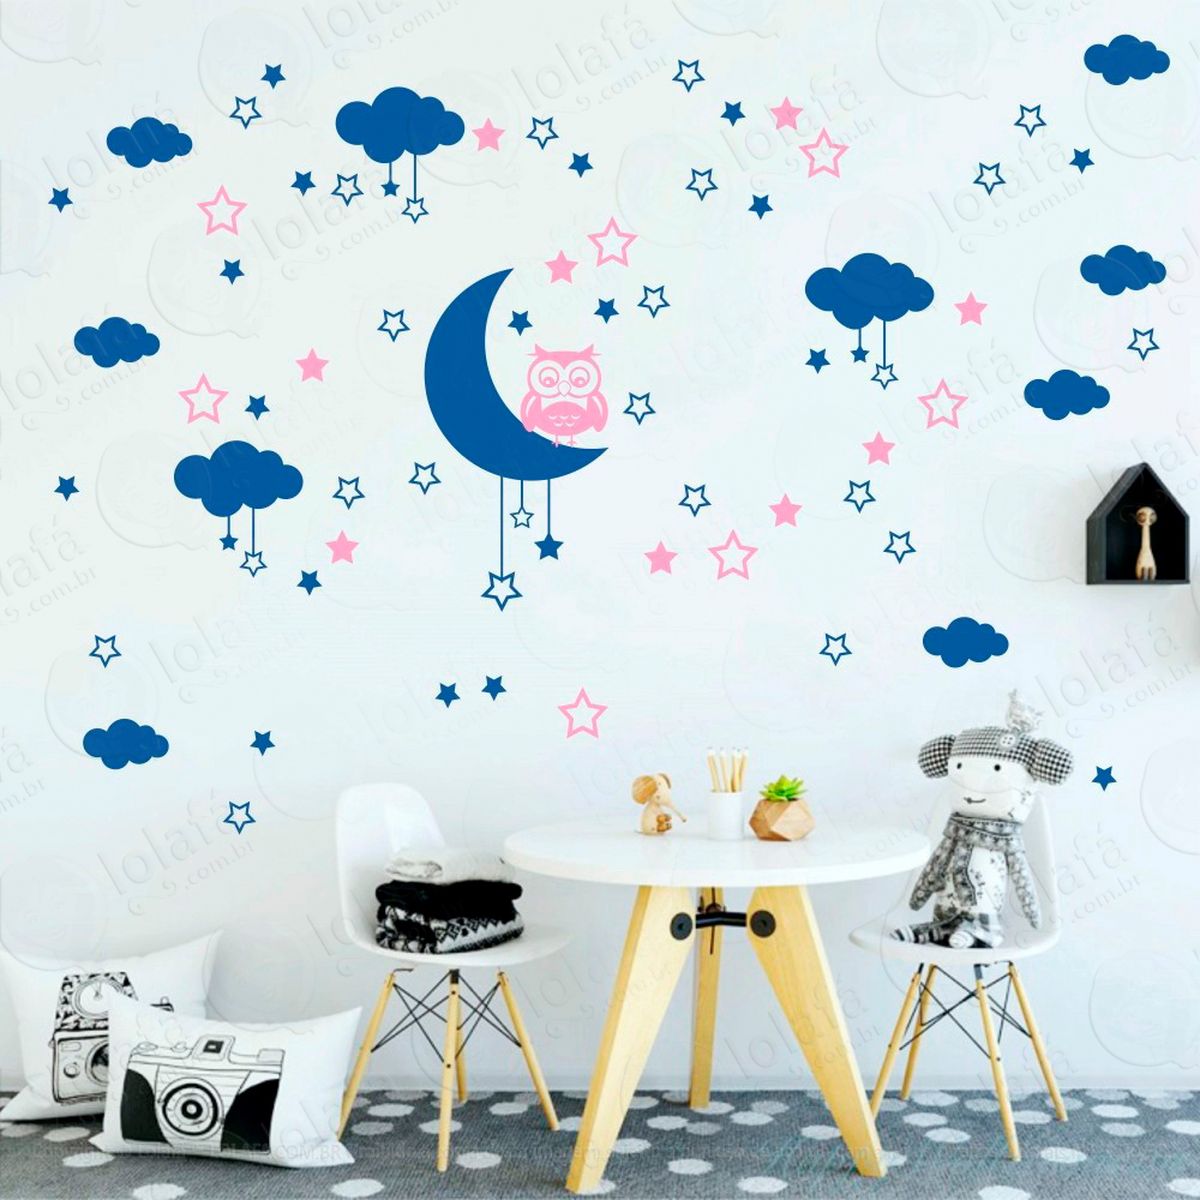 adesivos lua nuvens estrelas e coruja 103 peças adesivos para quarto de bebê infantil - mod:180